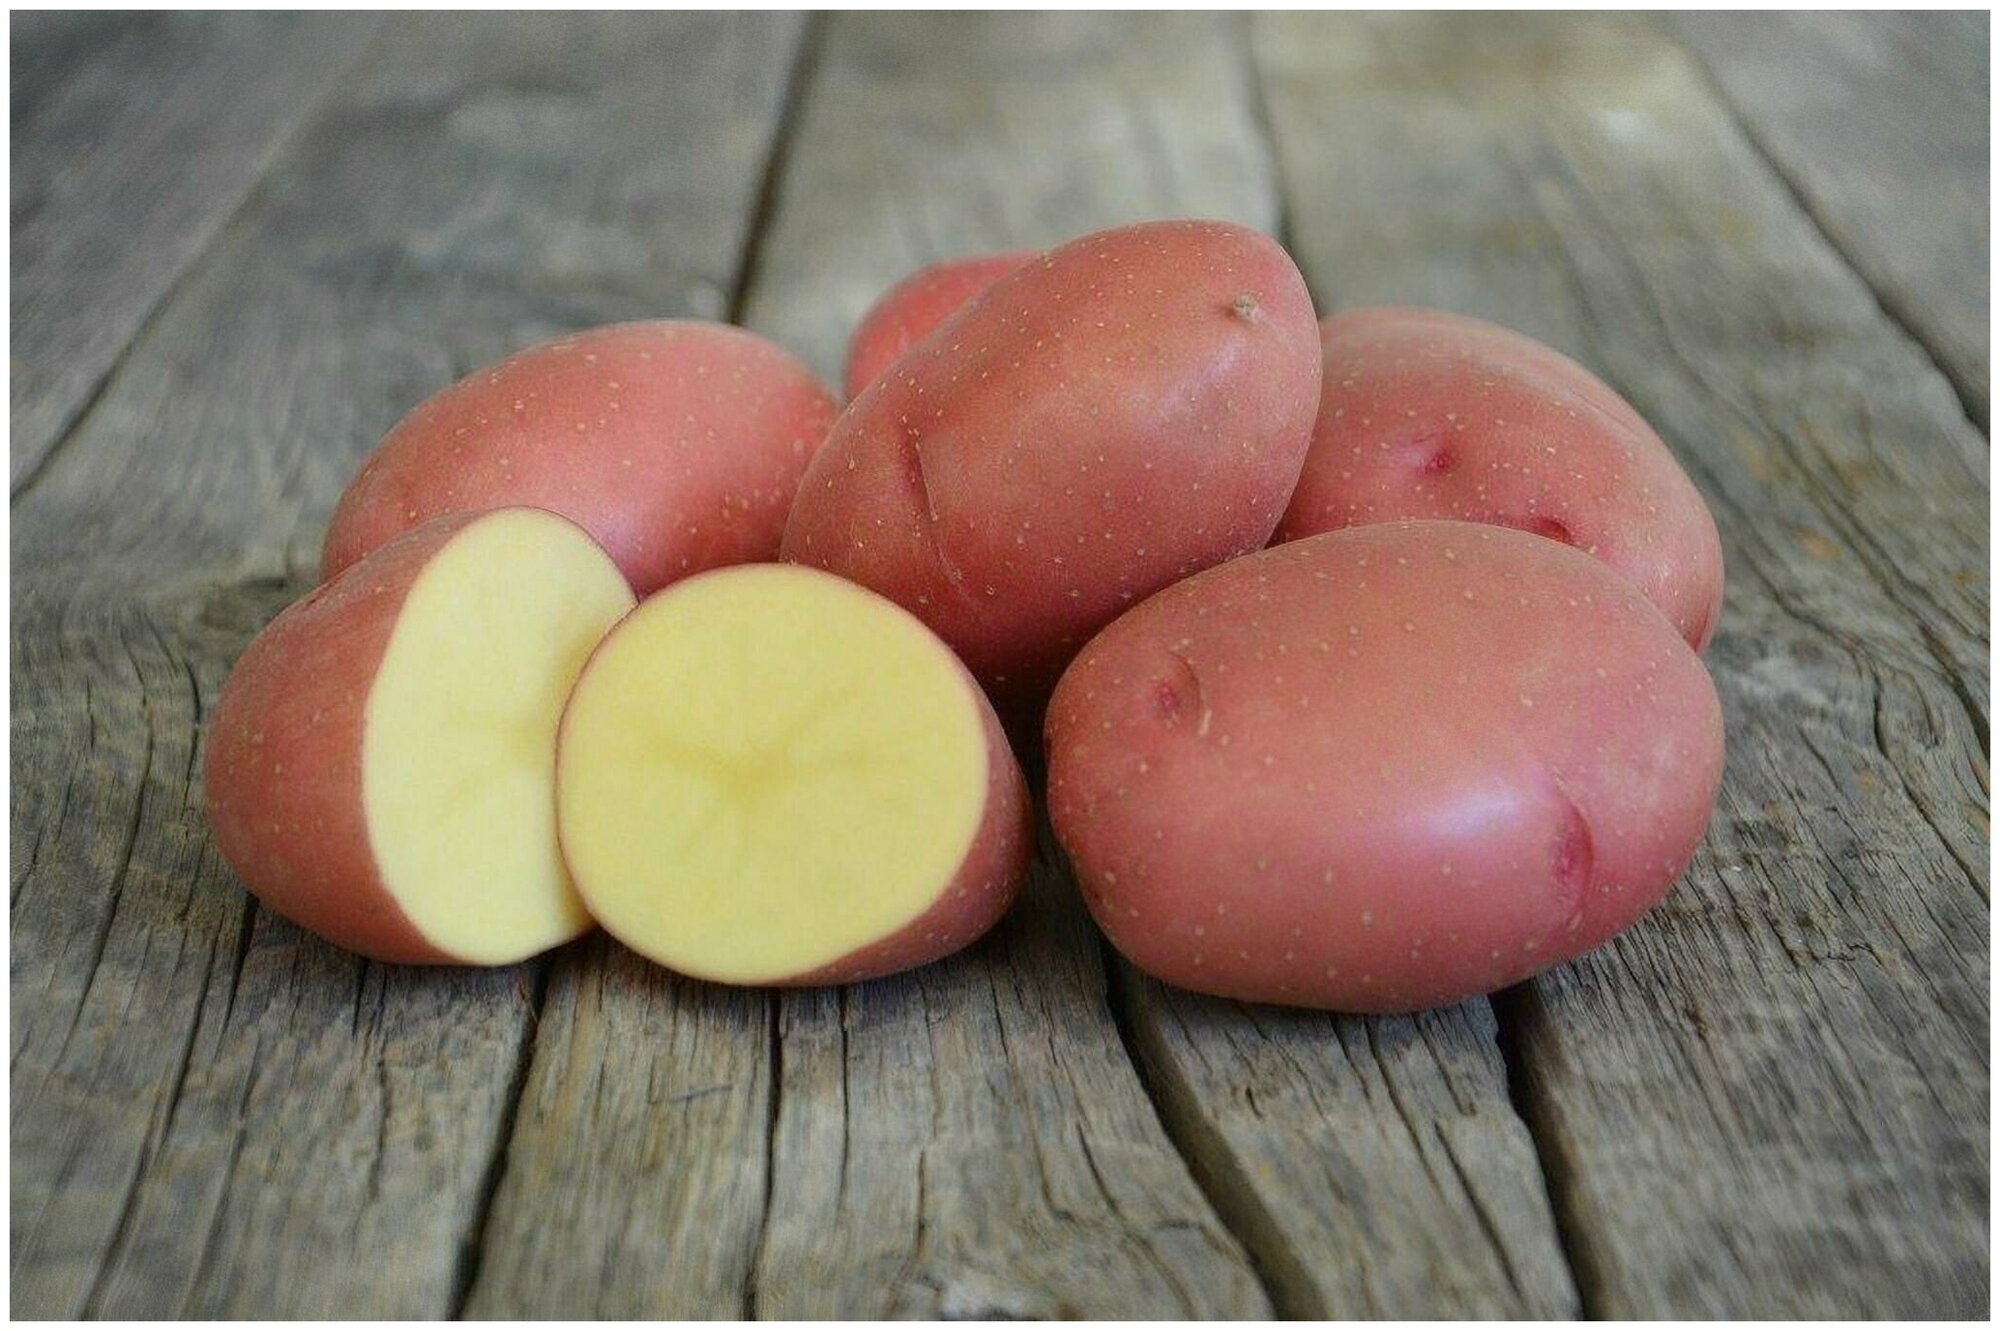 Картофель сорта Беллароза, 2 кг в сетке , класса Люкс, семенной тип селекционный высшего качества с премиальным вкусом, репродукция Супер Элита